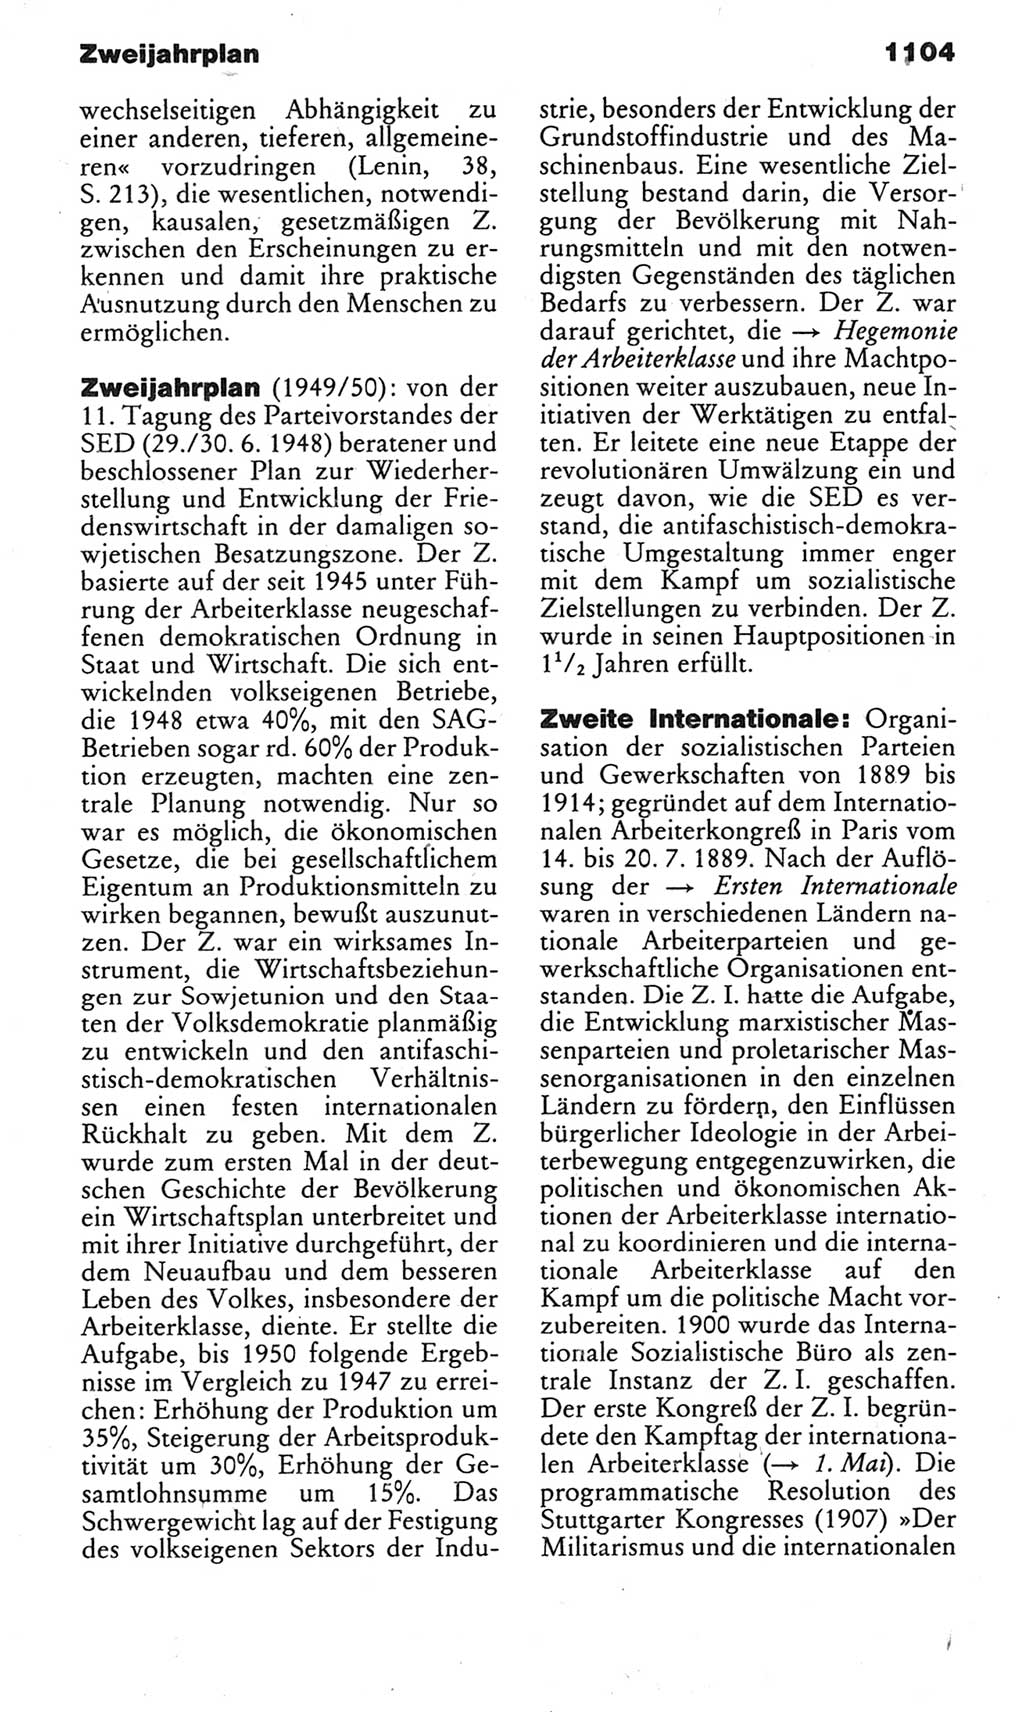 Kleines politisches Wörterbuch [Deutsche Demokratische Republik (DDR)] 1983, Seite 1104 (Kl. pol. Wb. DDR 1983, S. 1104)